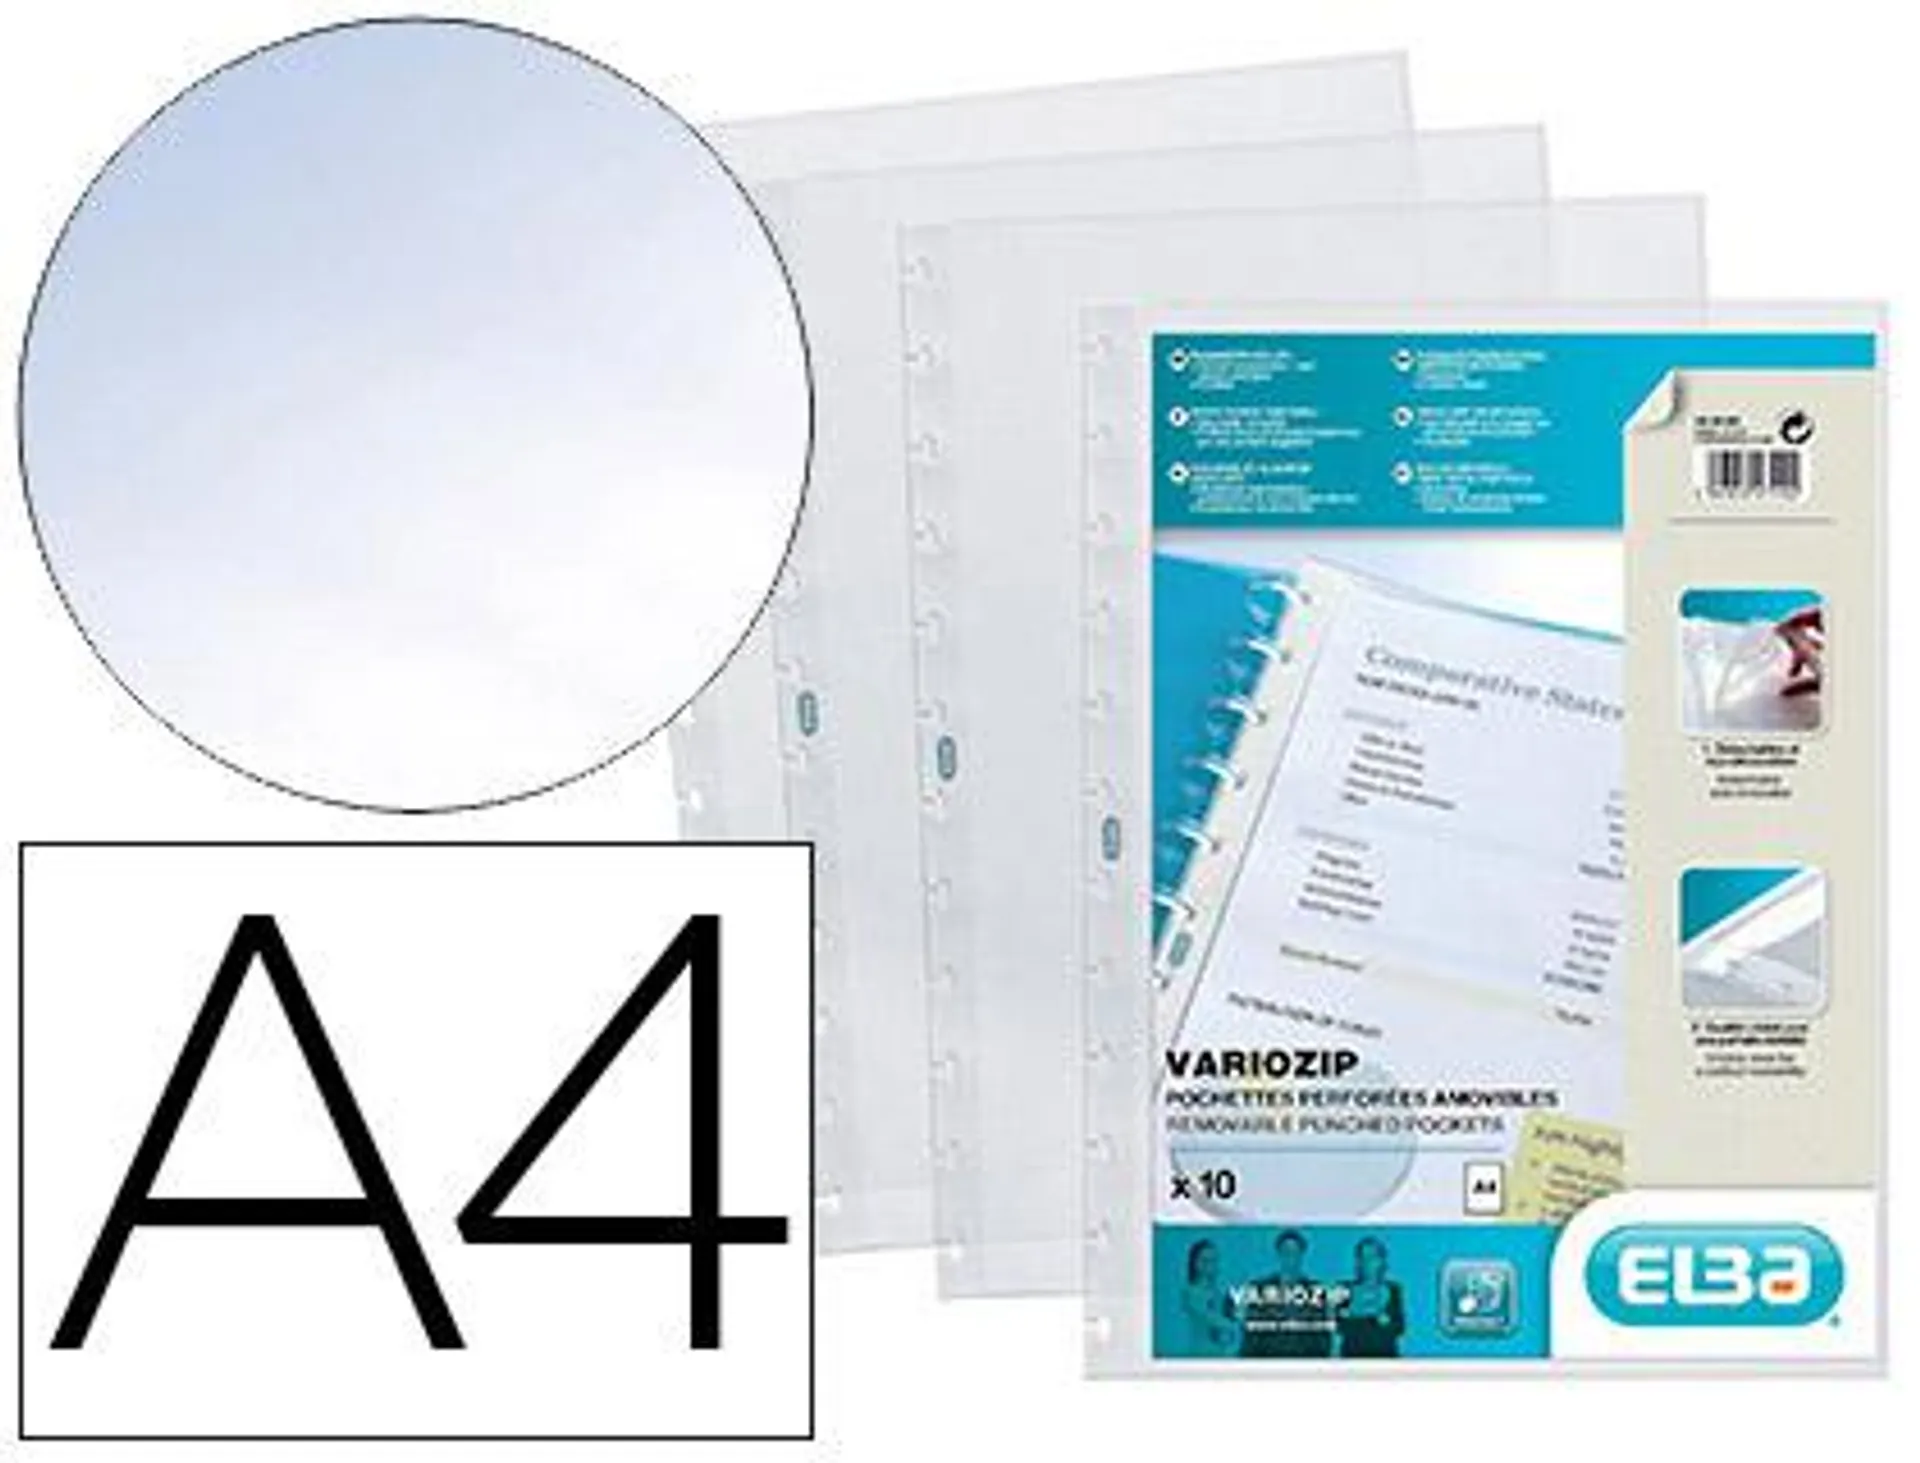 Pochette elba recharge protège-documents vario zip polyvision cristal lisse a4 210x297mm paquet 10 unités